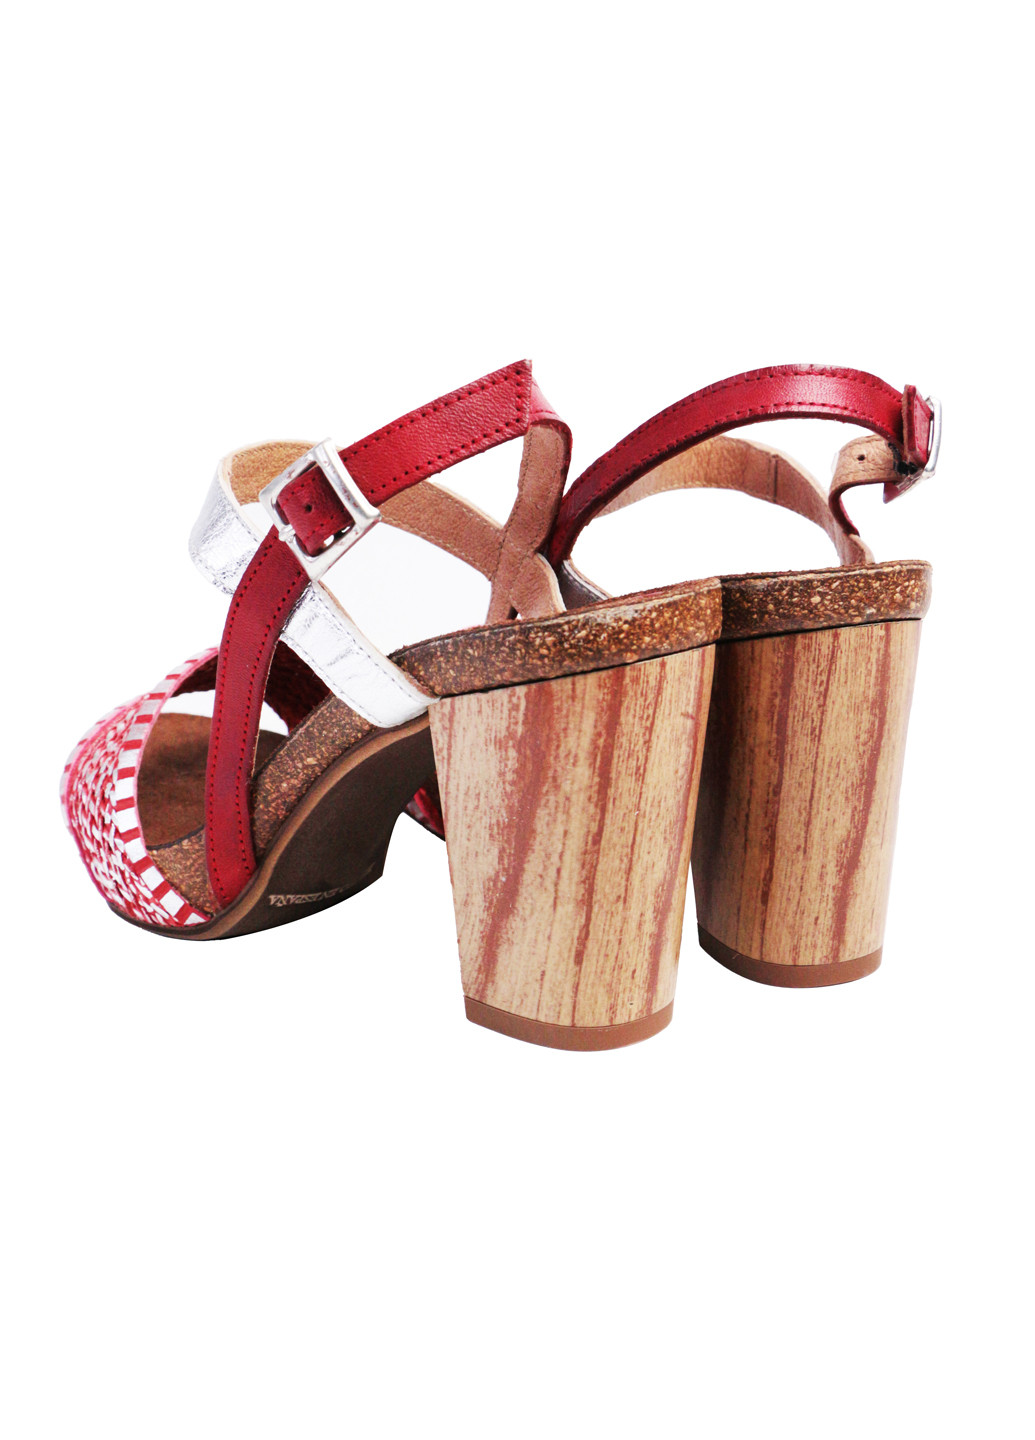 Комбинированные босоножки женские натуральная кожа на широком каблуке 39 красно-серебристый a&d Lidl